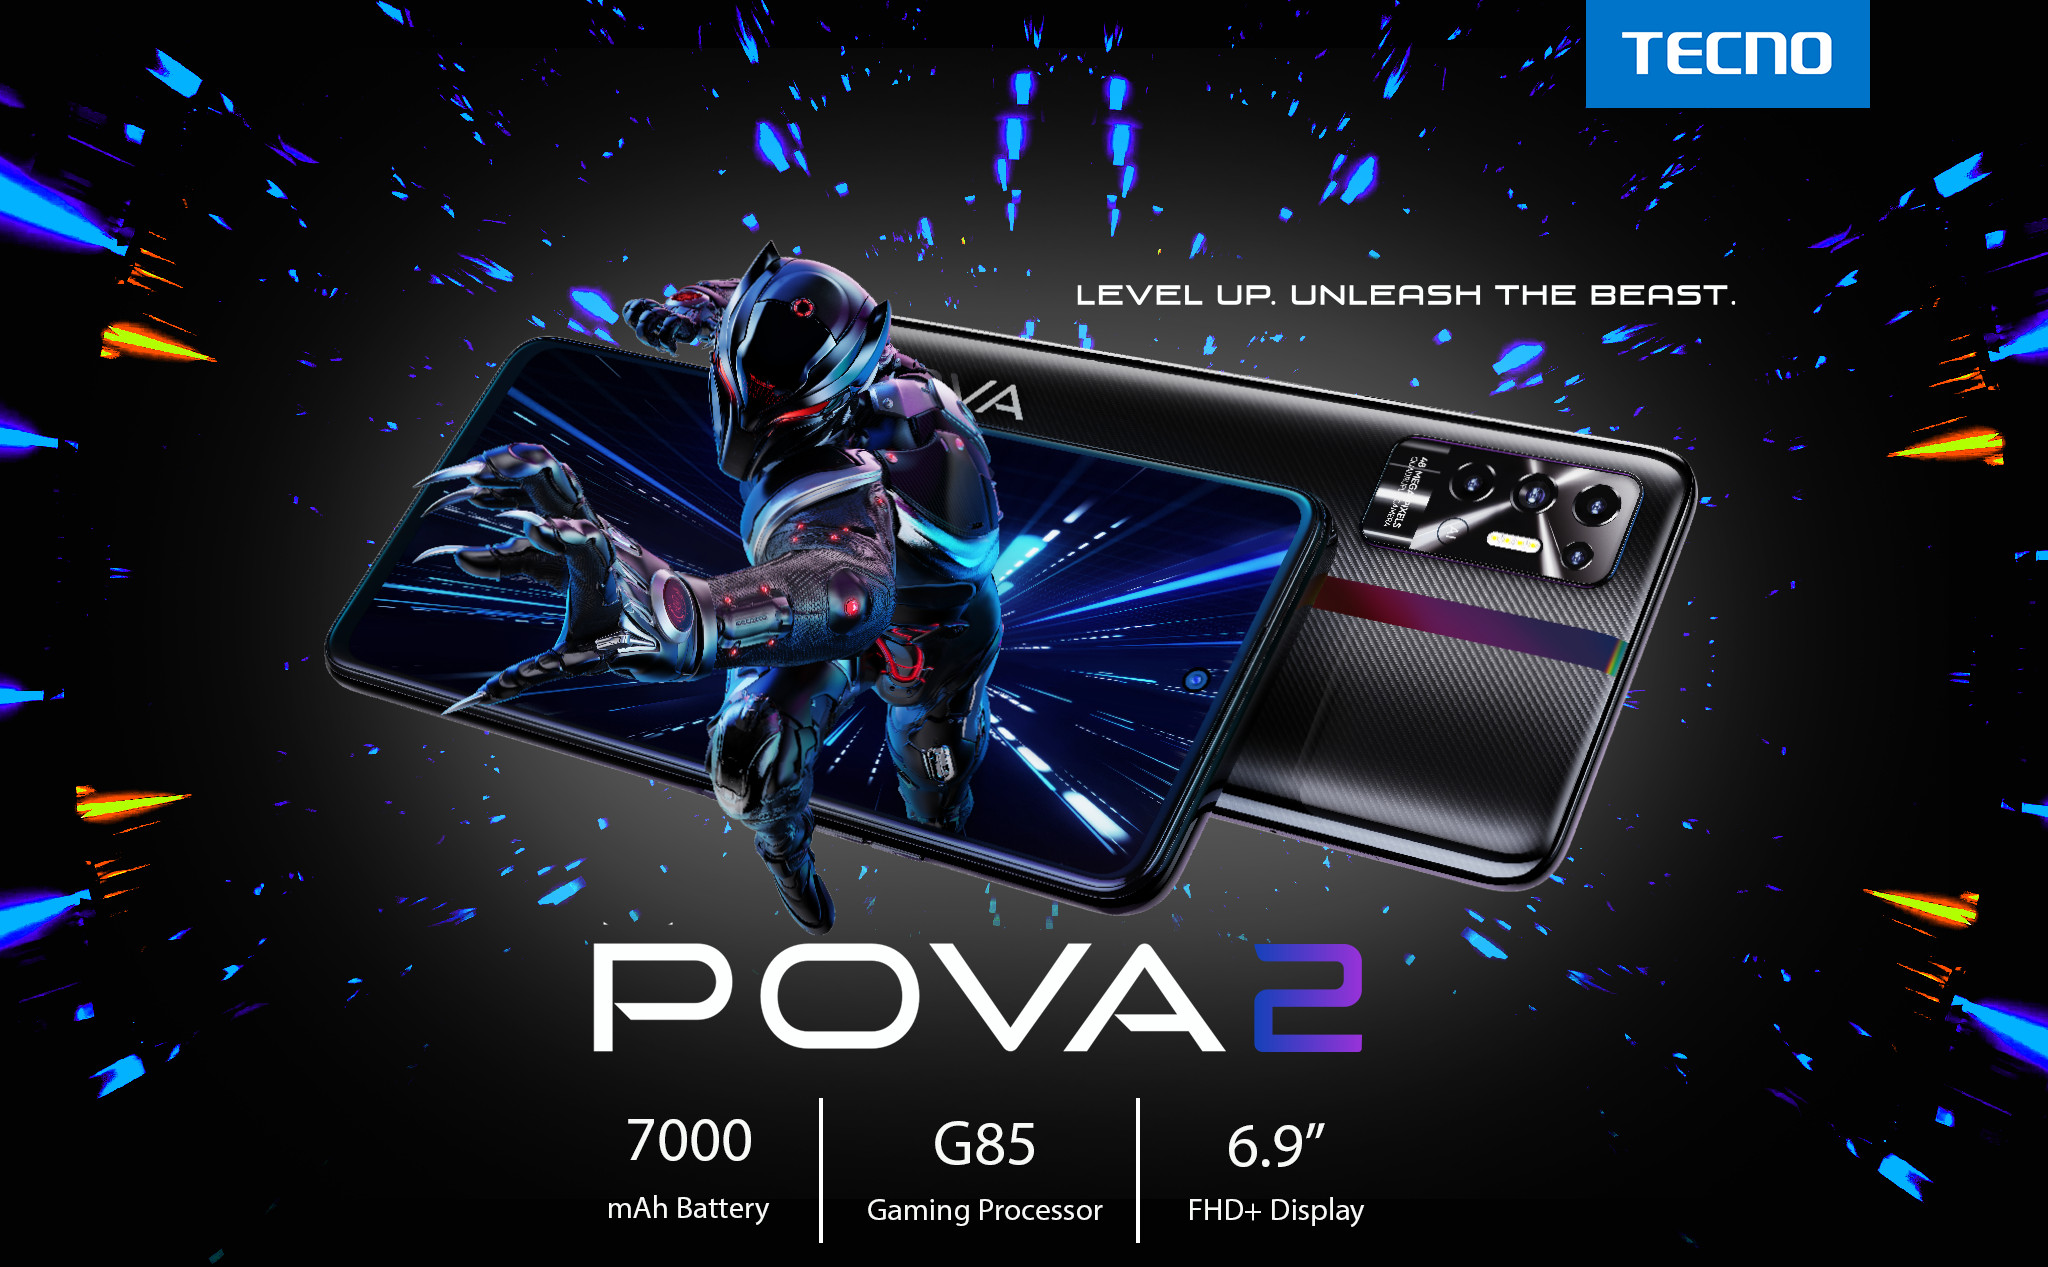 [QC] Ra mắt điện thoại dành cho game thủ POVA 2, TECNO Mobile chính thức quay lại Việt Nam